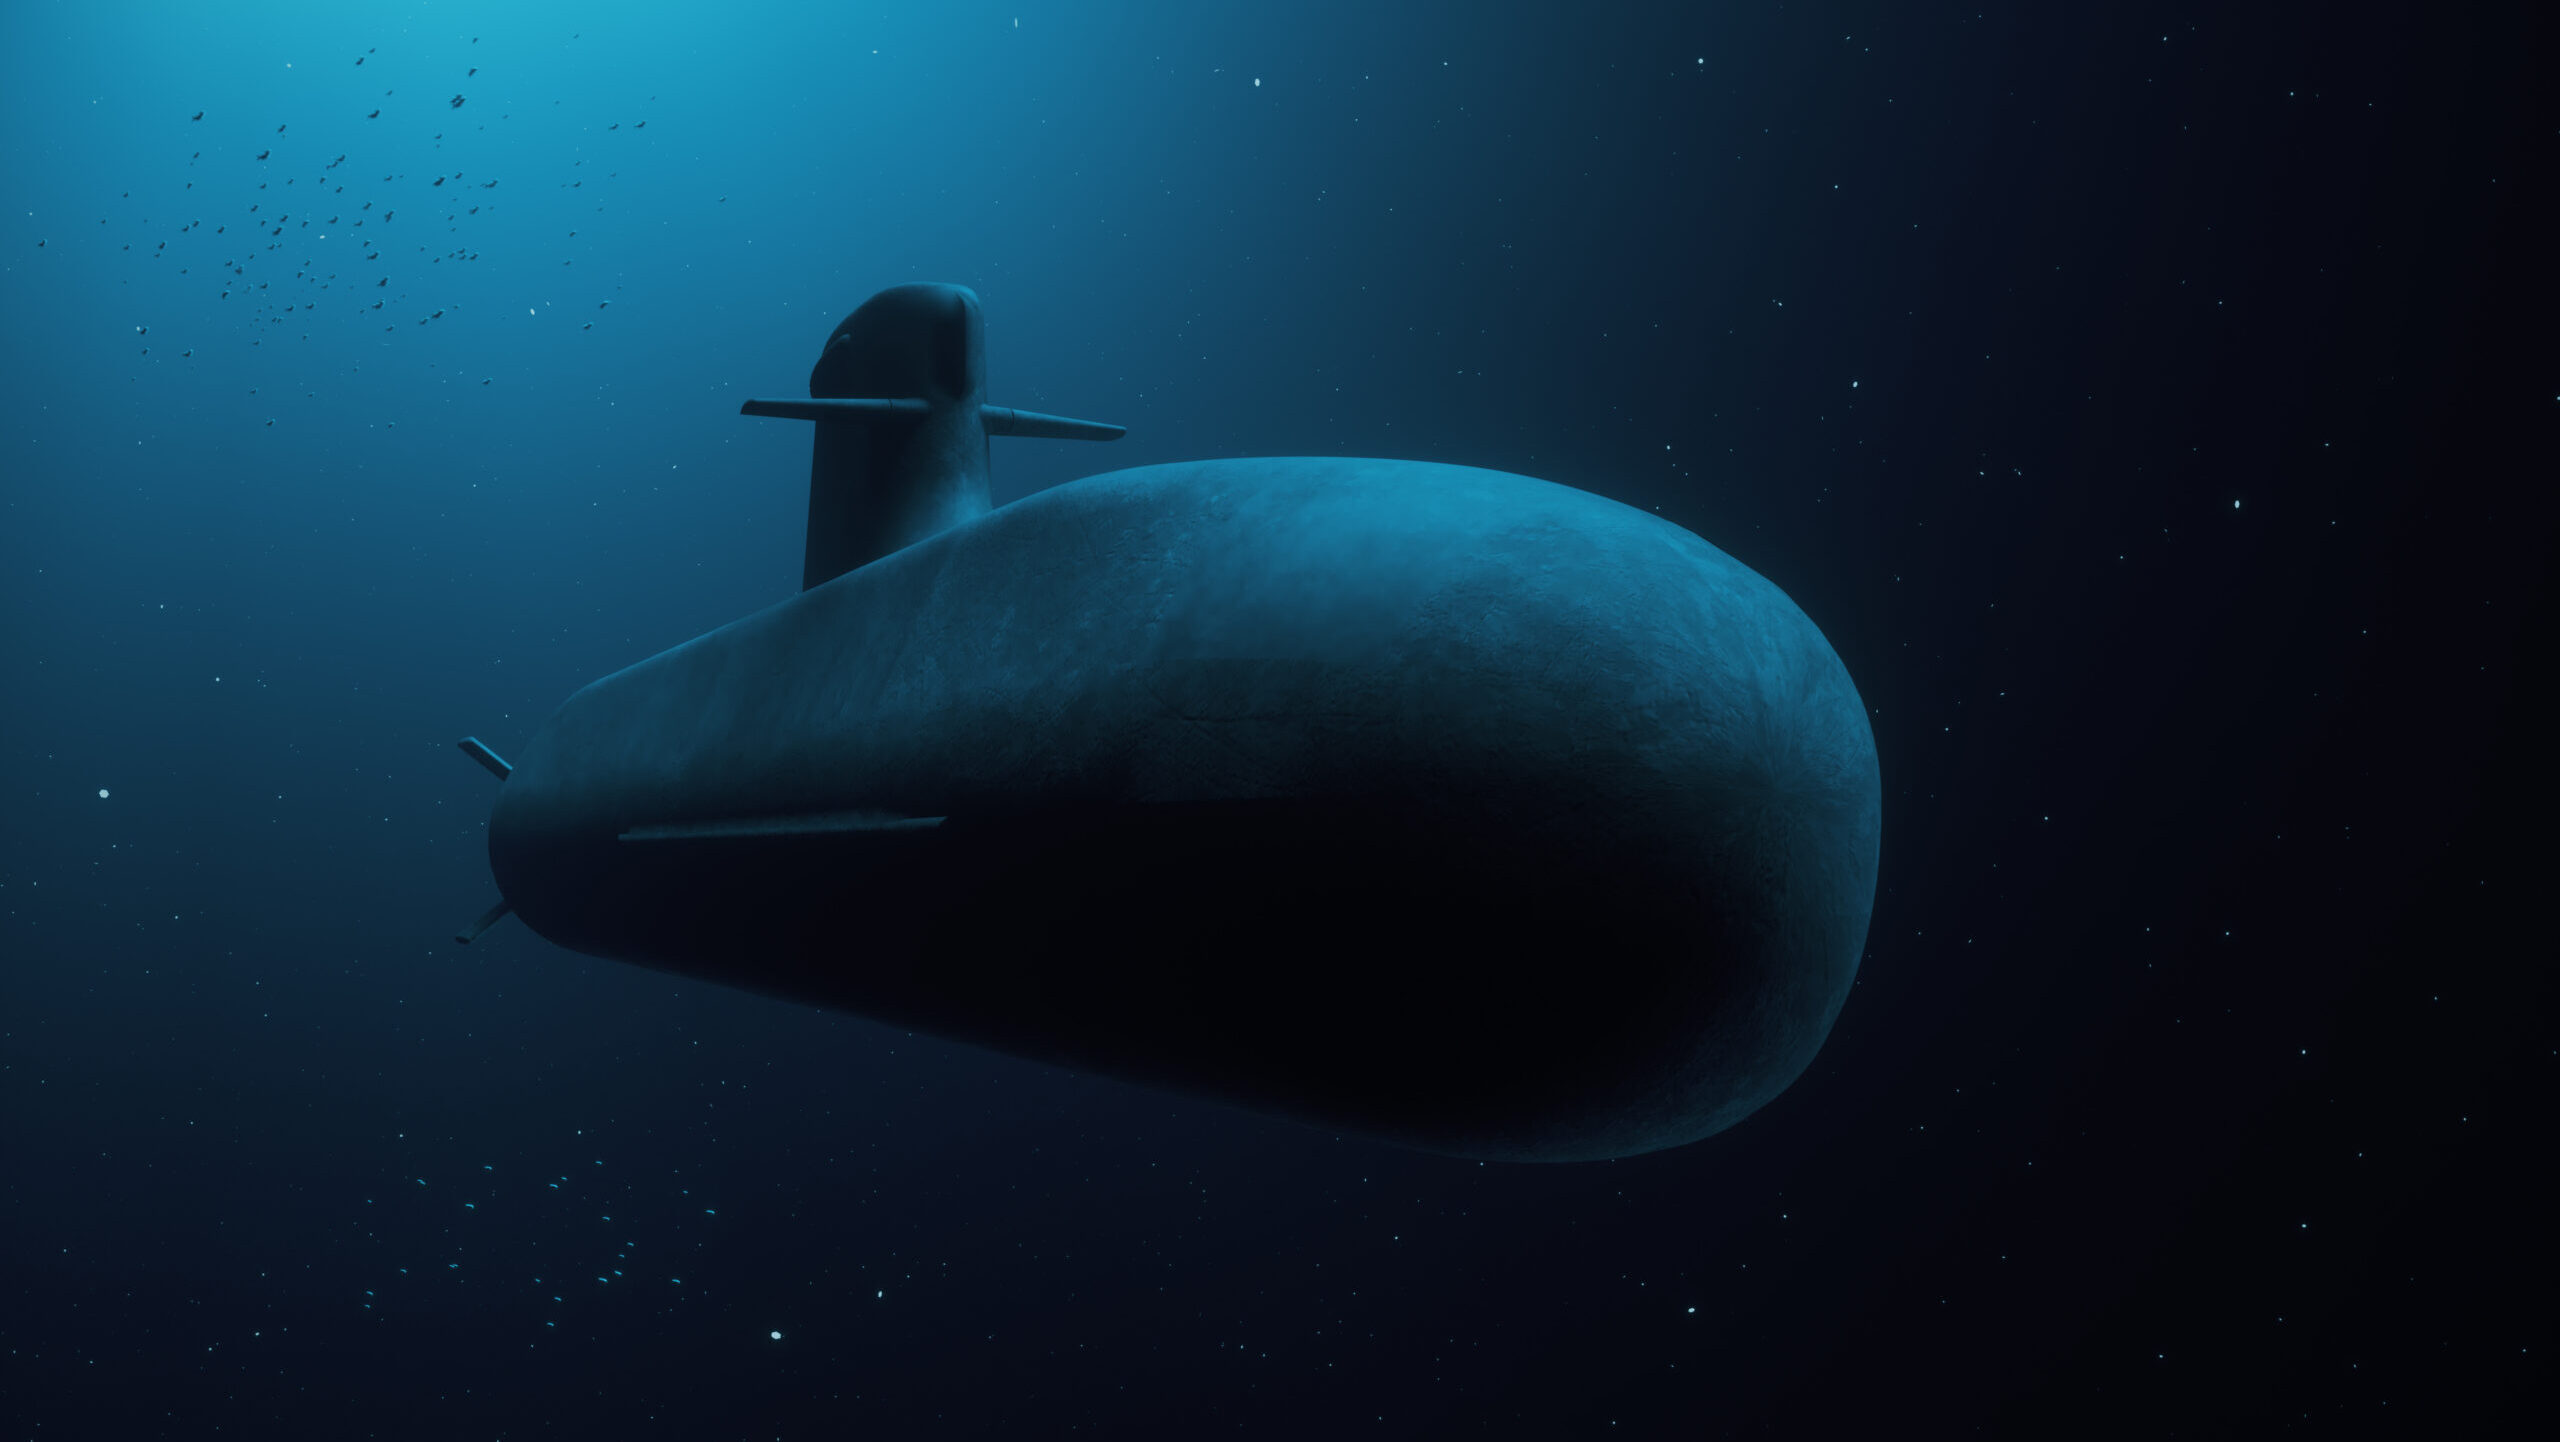 Nederland ontkent beschuldigingen van ‘lakse eisen’ voor nieuwe onderzeeërs, Amerikaanse zorgen over tomahawks